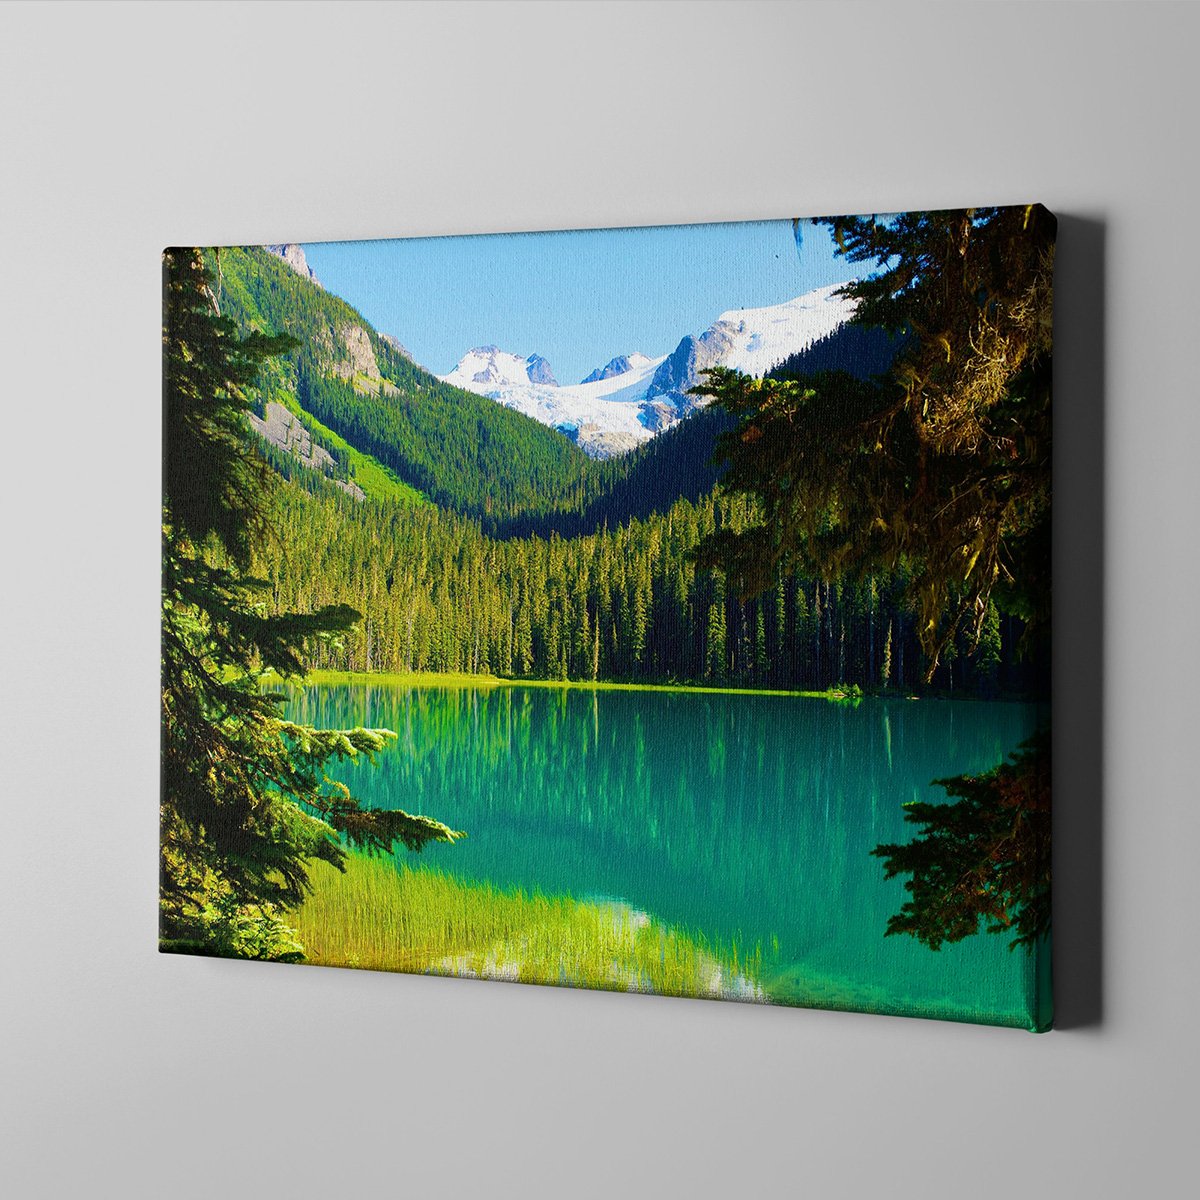 Canvas701 | Göl ve Yeşil Kanvas Tablo - 